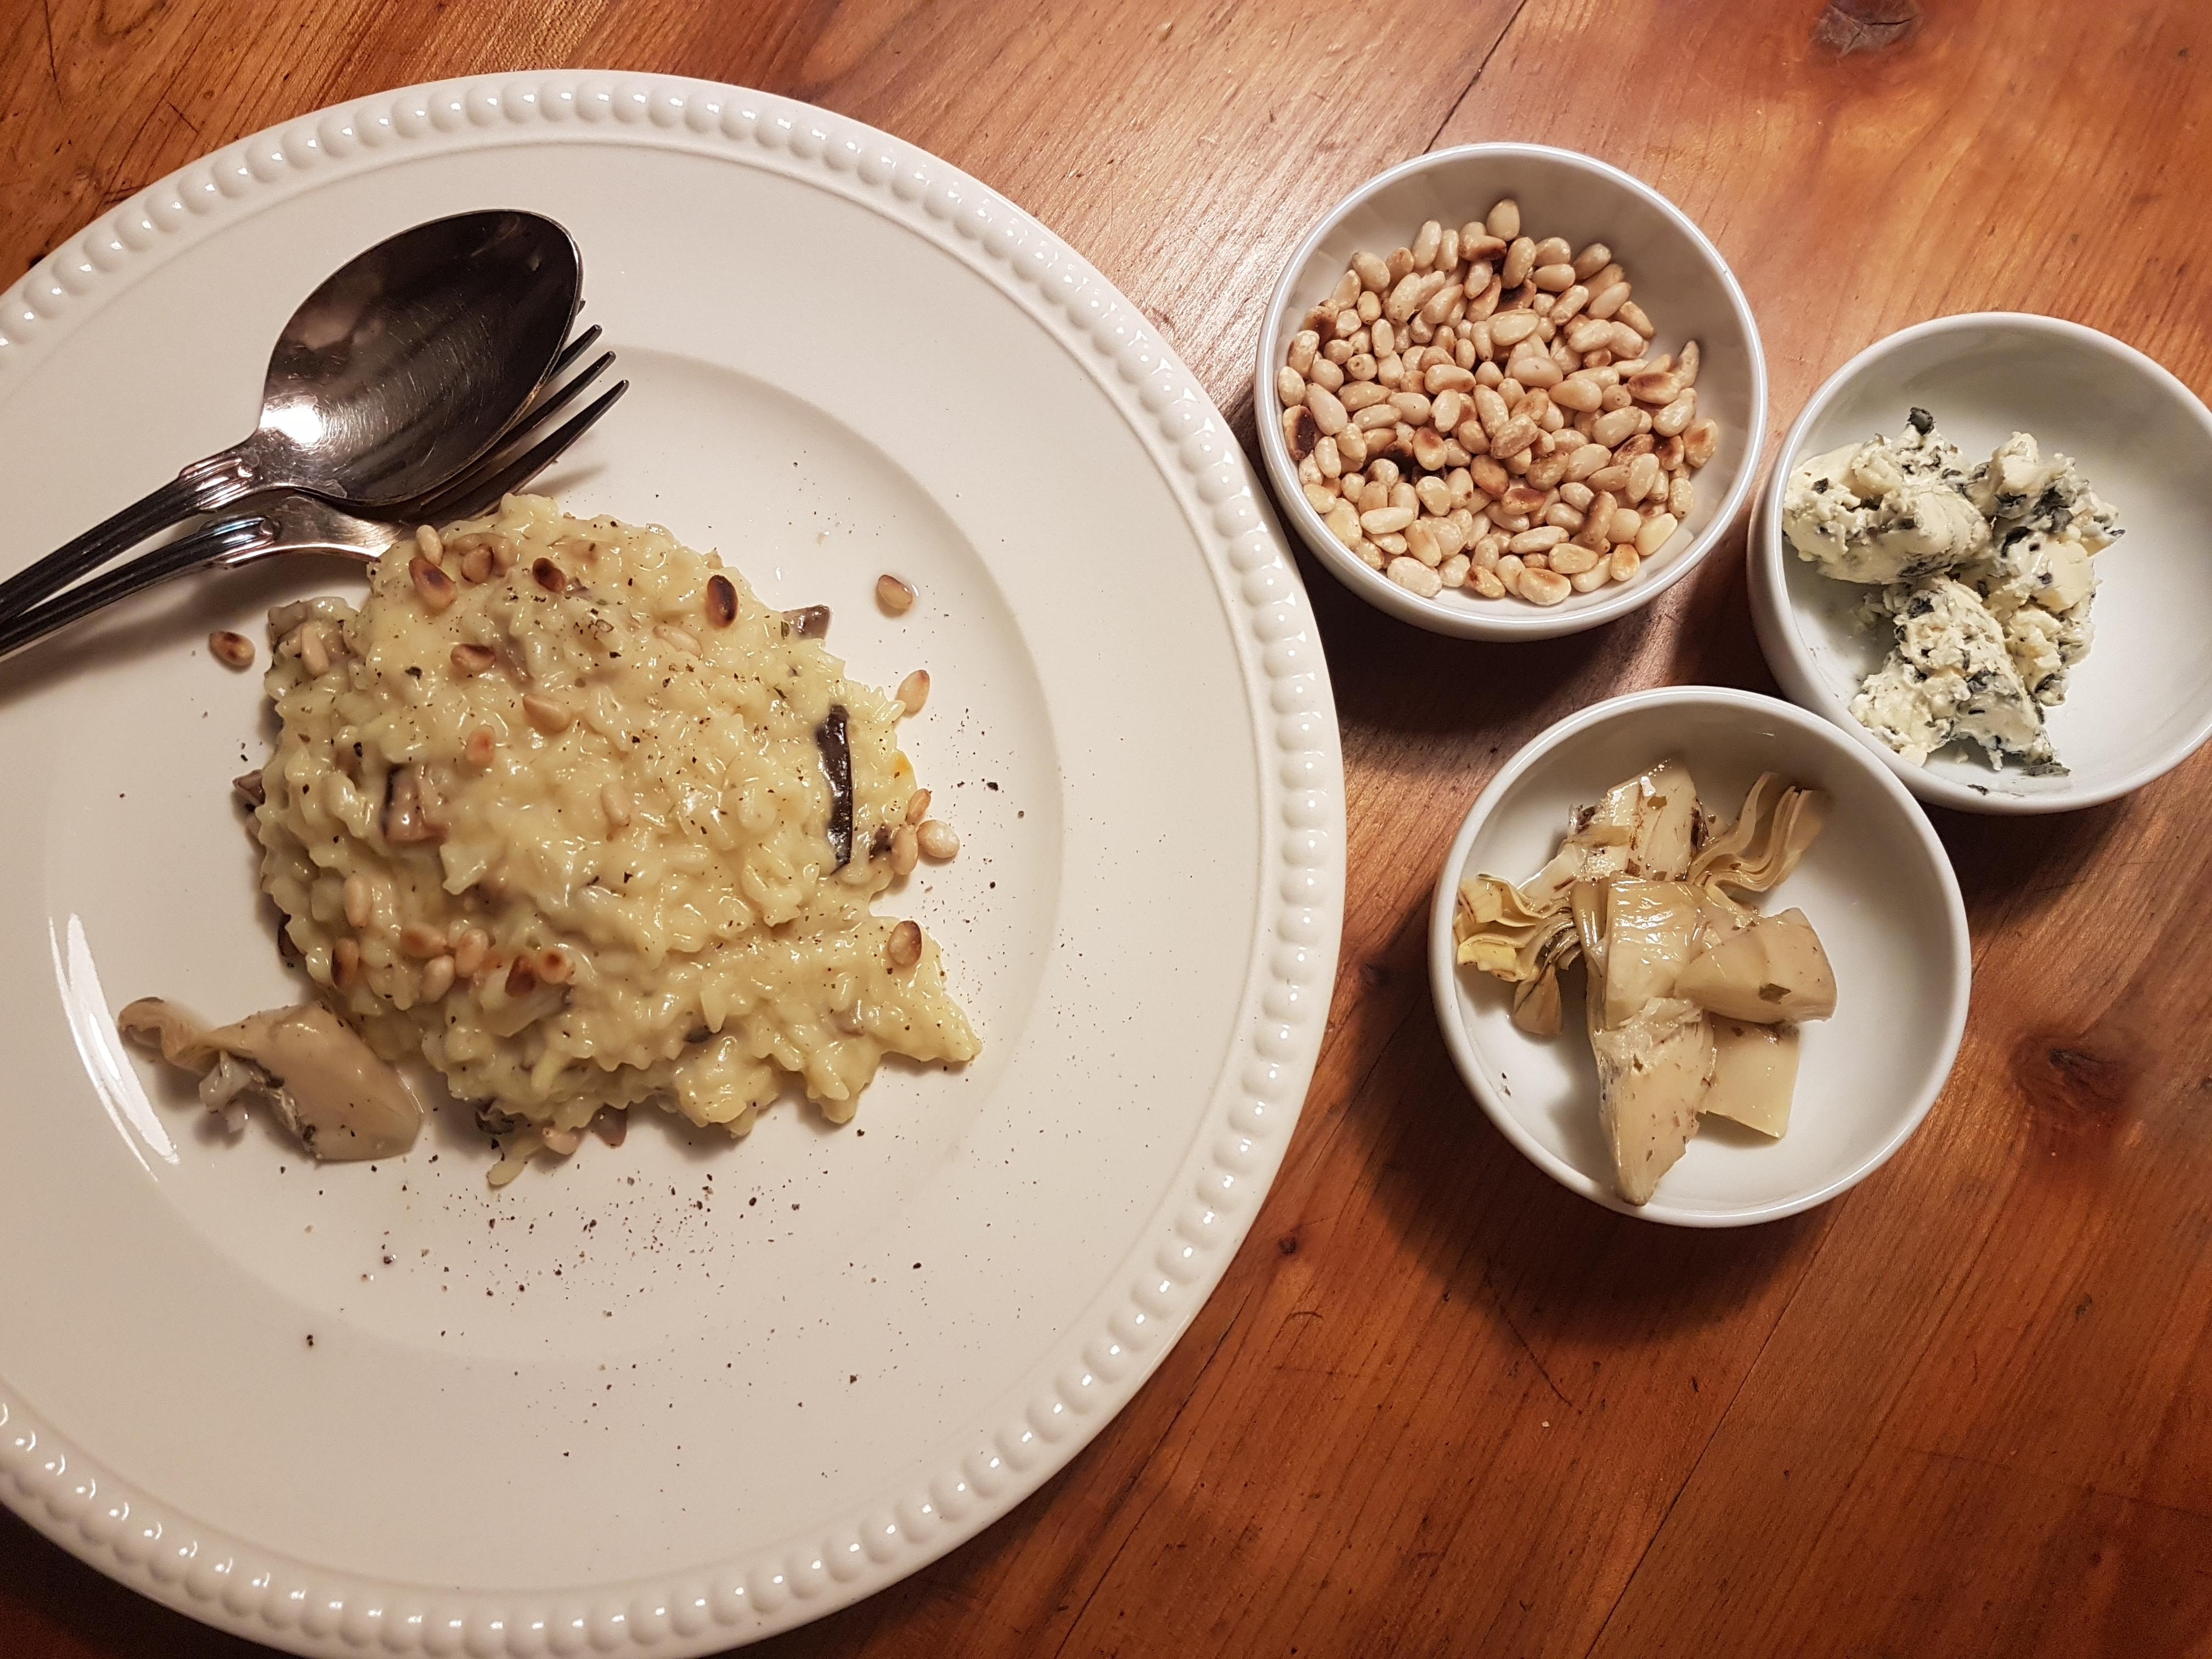 Yummie Food zum neuen Jahr. 
#Risotto
#Pilze
#pinienkerne
#gorgonzola
#artischocken 